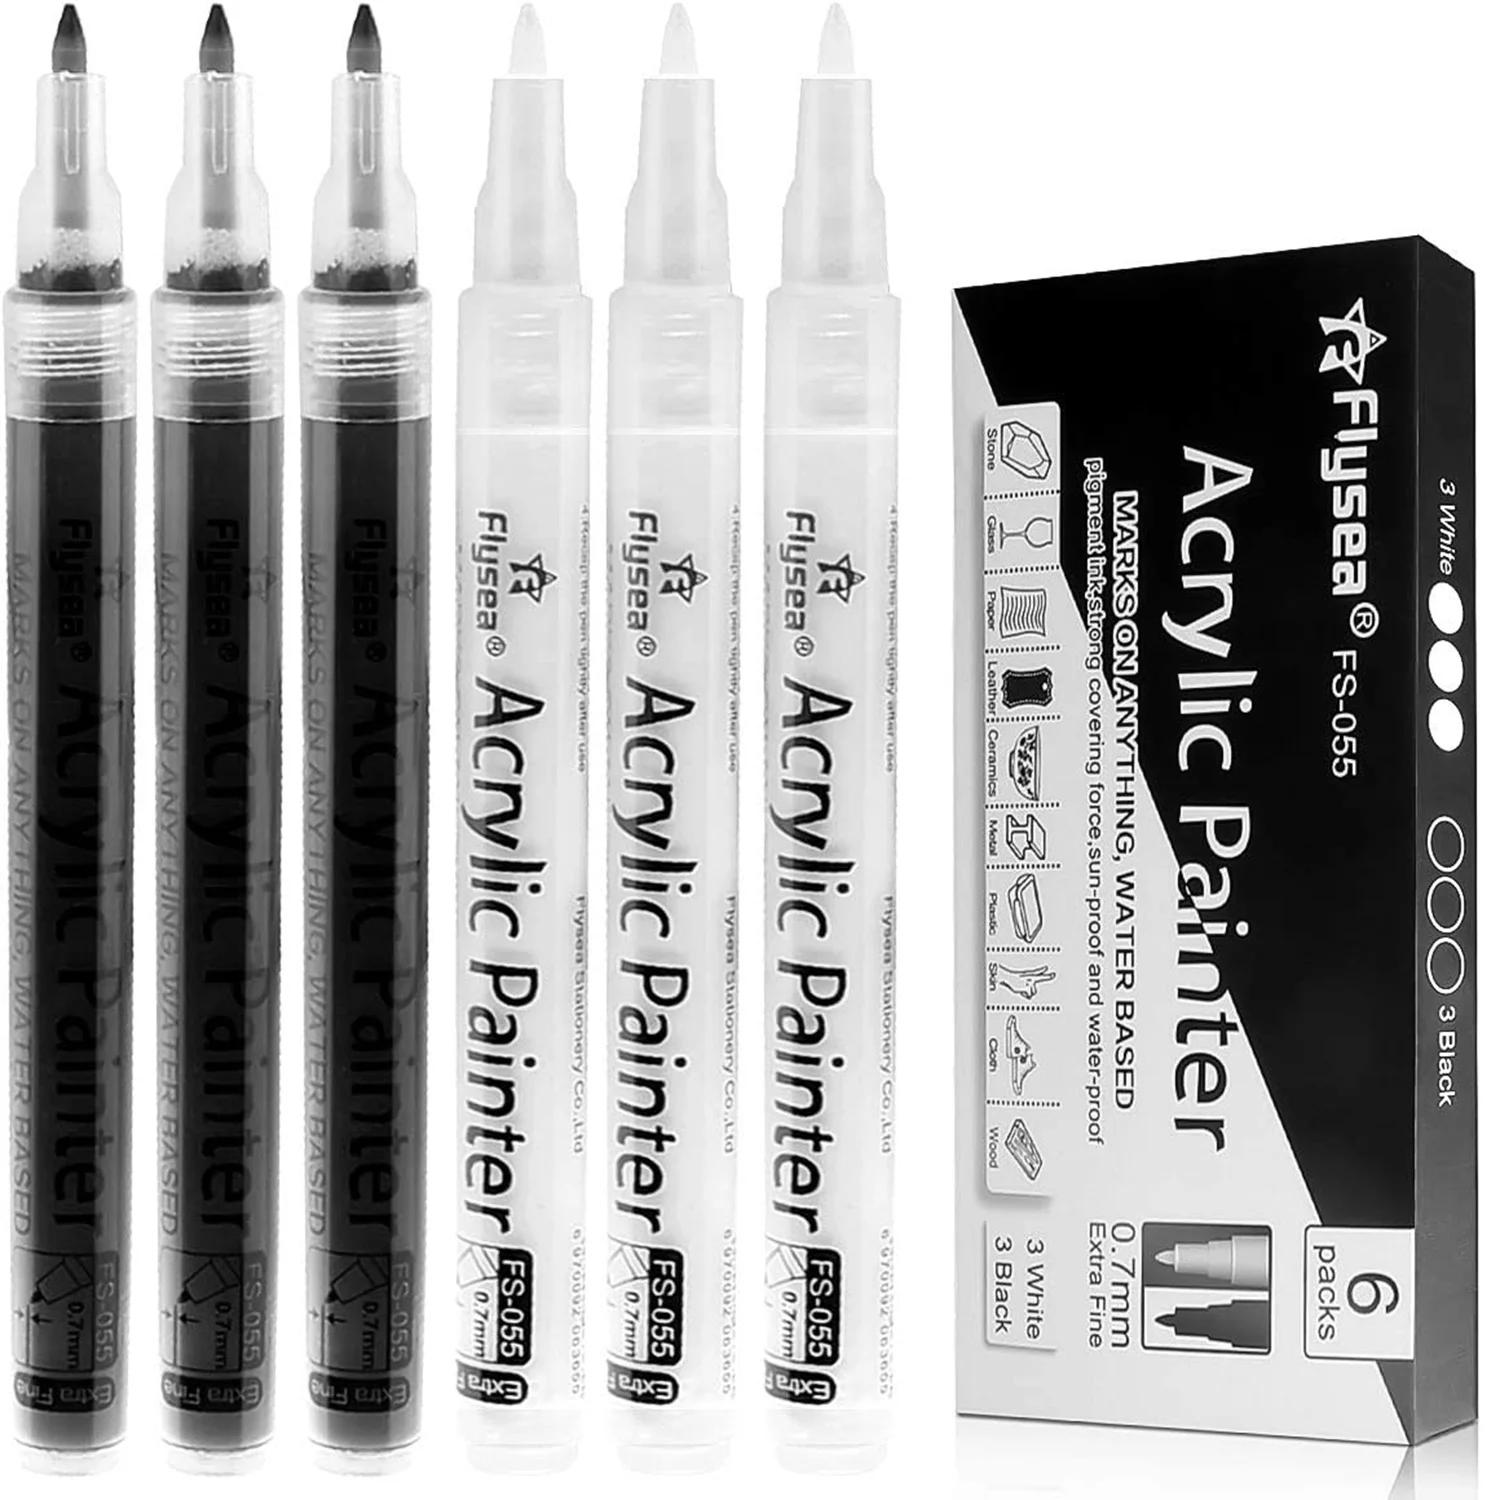 암벽화용 블랙 페인트 펜, 아크릴 블랙 네임펜, 수성 엑스트라 파인 포인트, 화이트 페인트 펜, 6 팩, 0.7mm